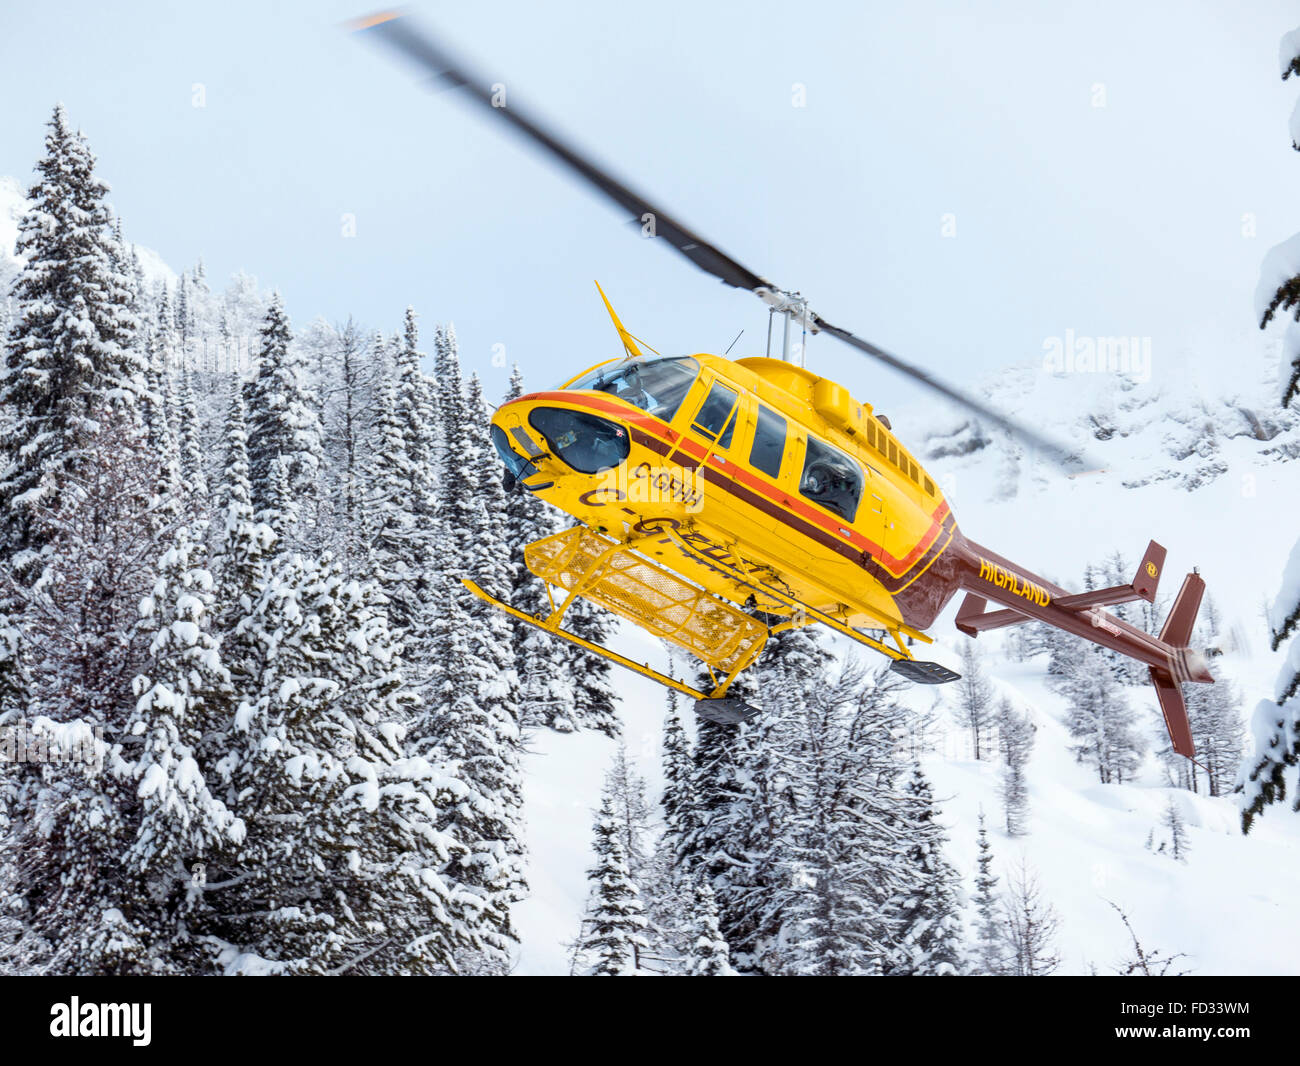 Les skieurs de l'arrière de l'hélicoptère vole à montage à distance Carlyle Lodge ; Monts Selkirk ; British Columbia, Canada Banque D'Images